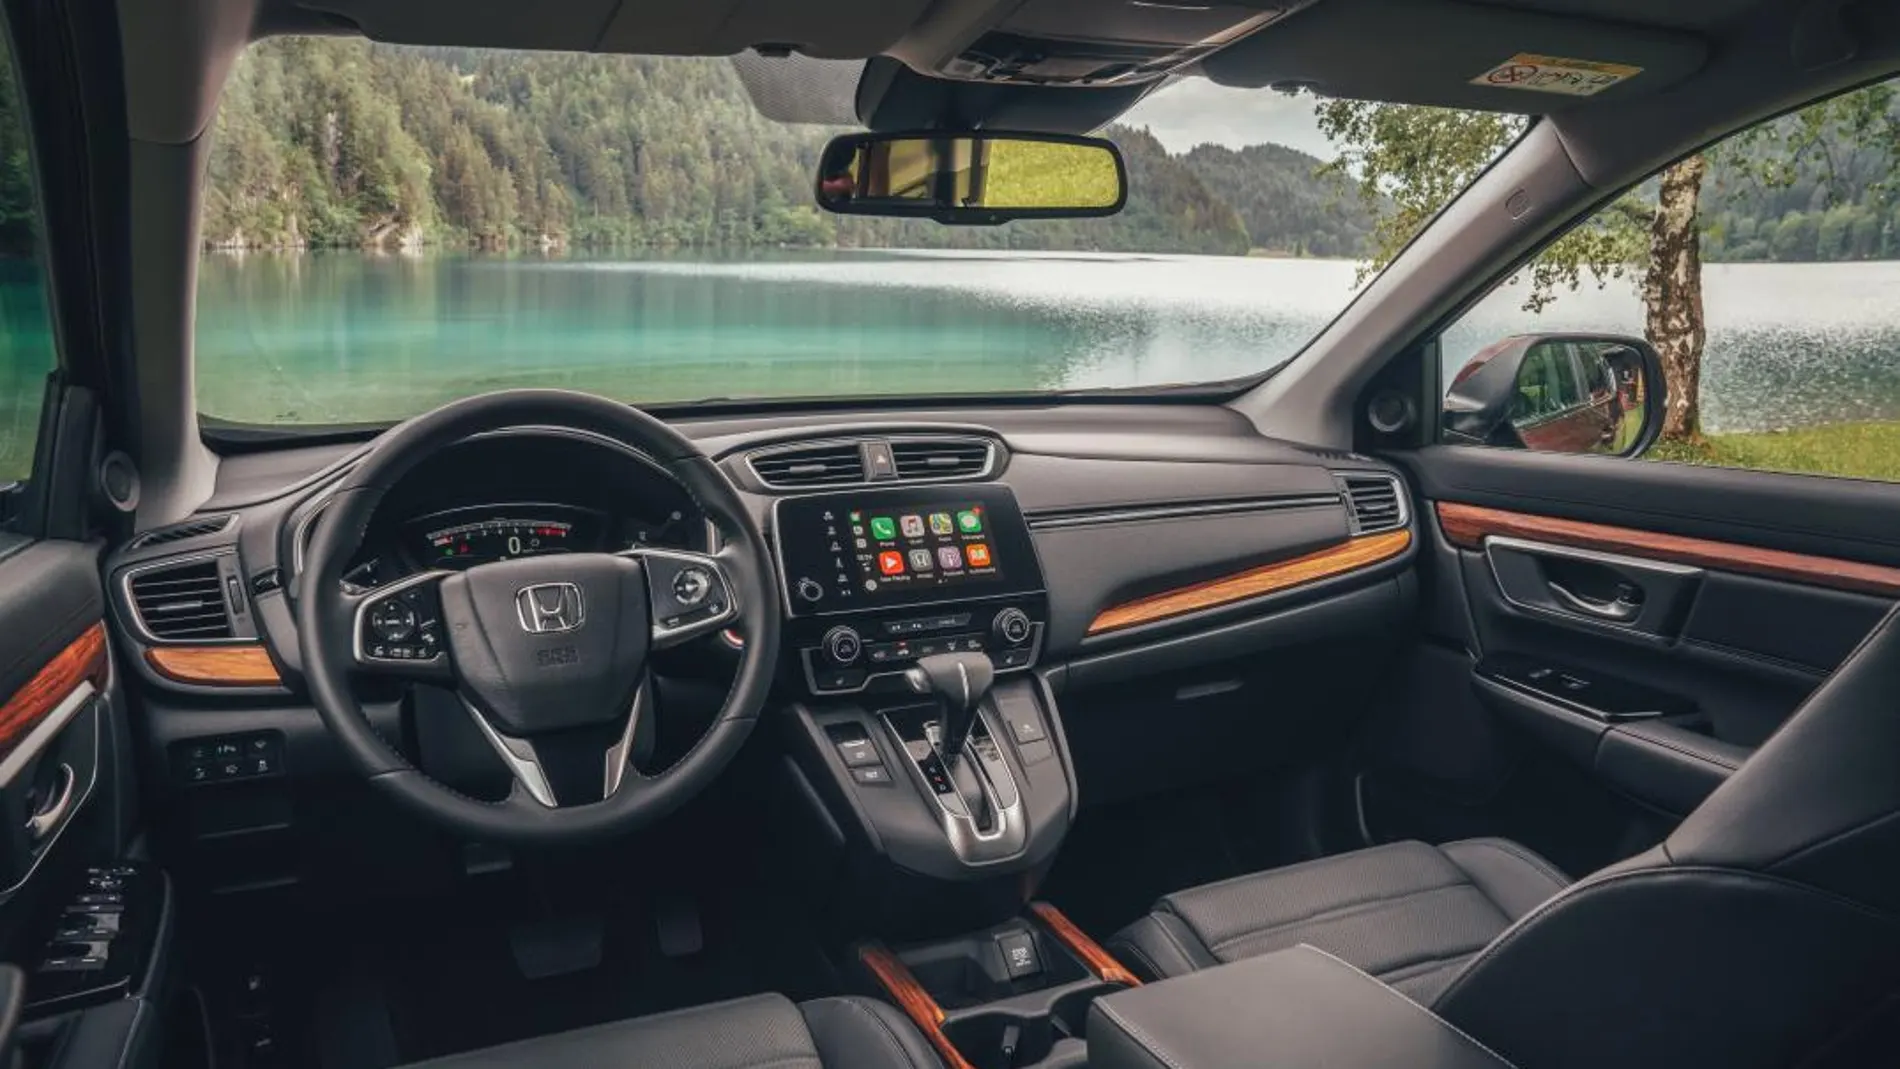 Honda anuncia los precios de la nueva gama CR-V con motor gasolina 1.5 Vtec Turbo